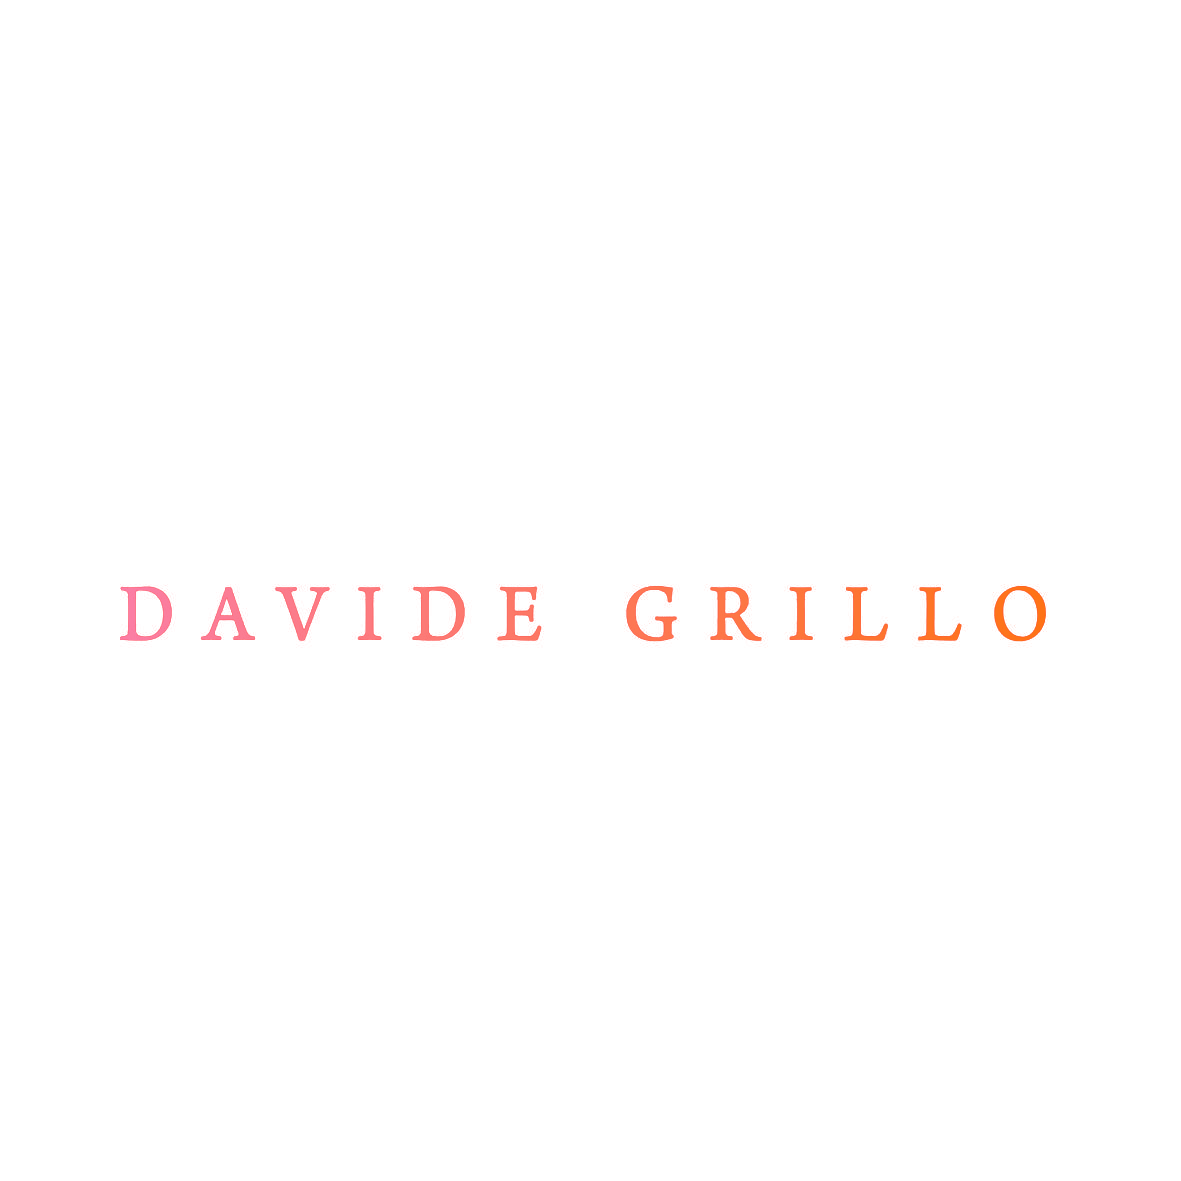 DAVIDE GRILLO